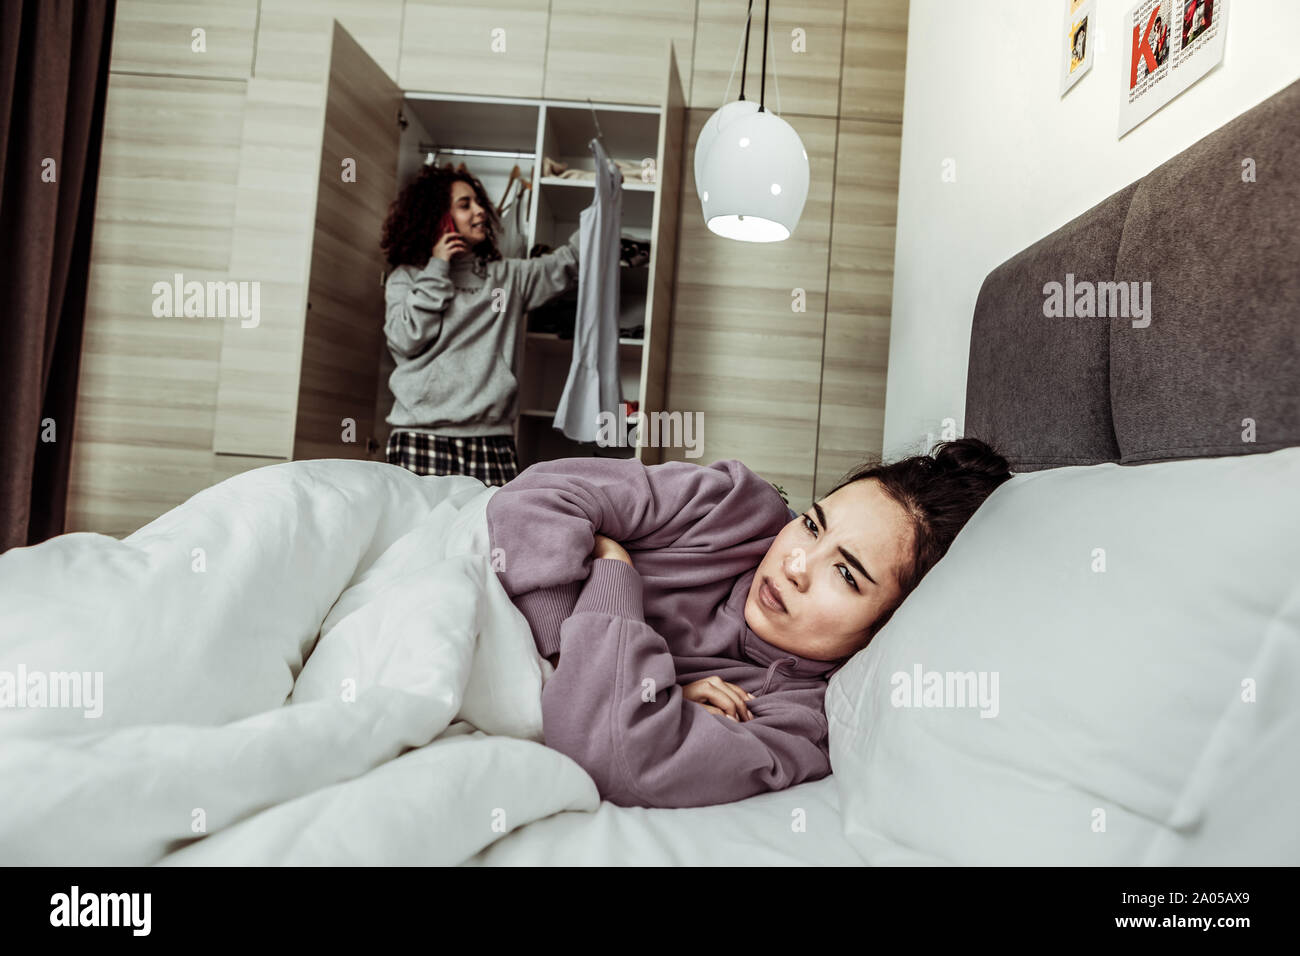 Mürrische junge Dame Kreuzung Arme auf der Brust im Bett vor ihr Mitbewohner liegen Stockfoto